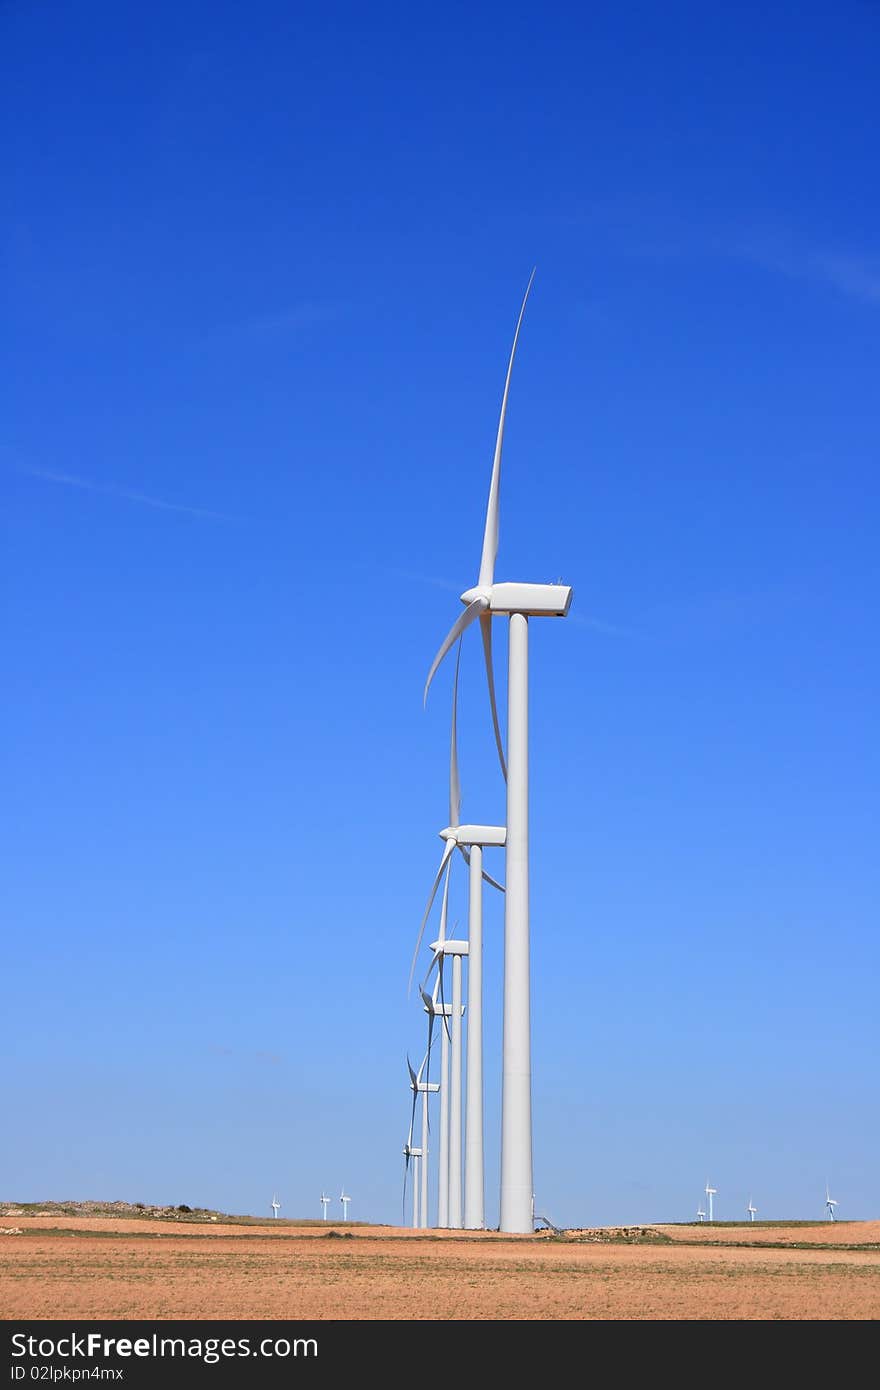 Wind turbines in Aragon fields (Spain)